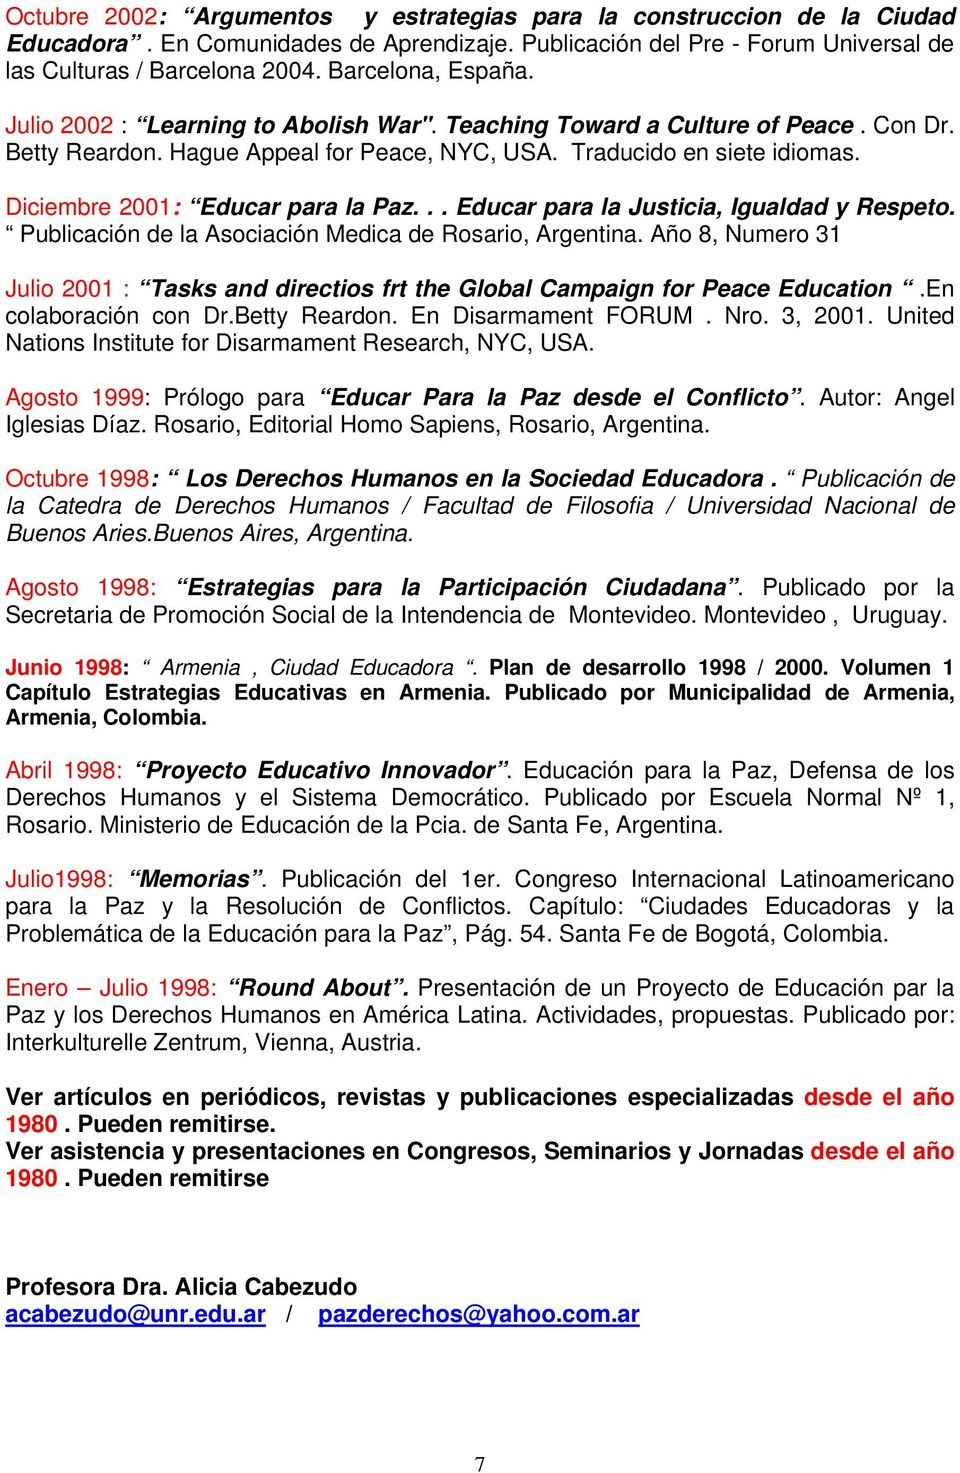 Diciembre 2001: Educar para la Paz... Educar para la Justicia, Igualdad y Respeto. Publicación de la Asociación Medica de Rosario, Argentina.